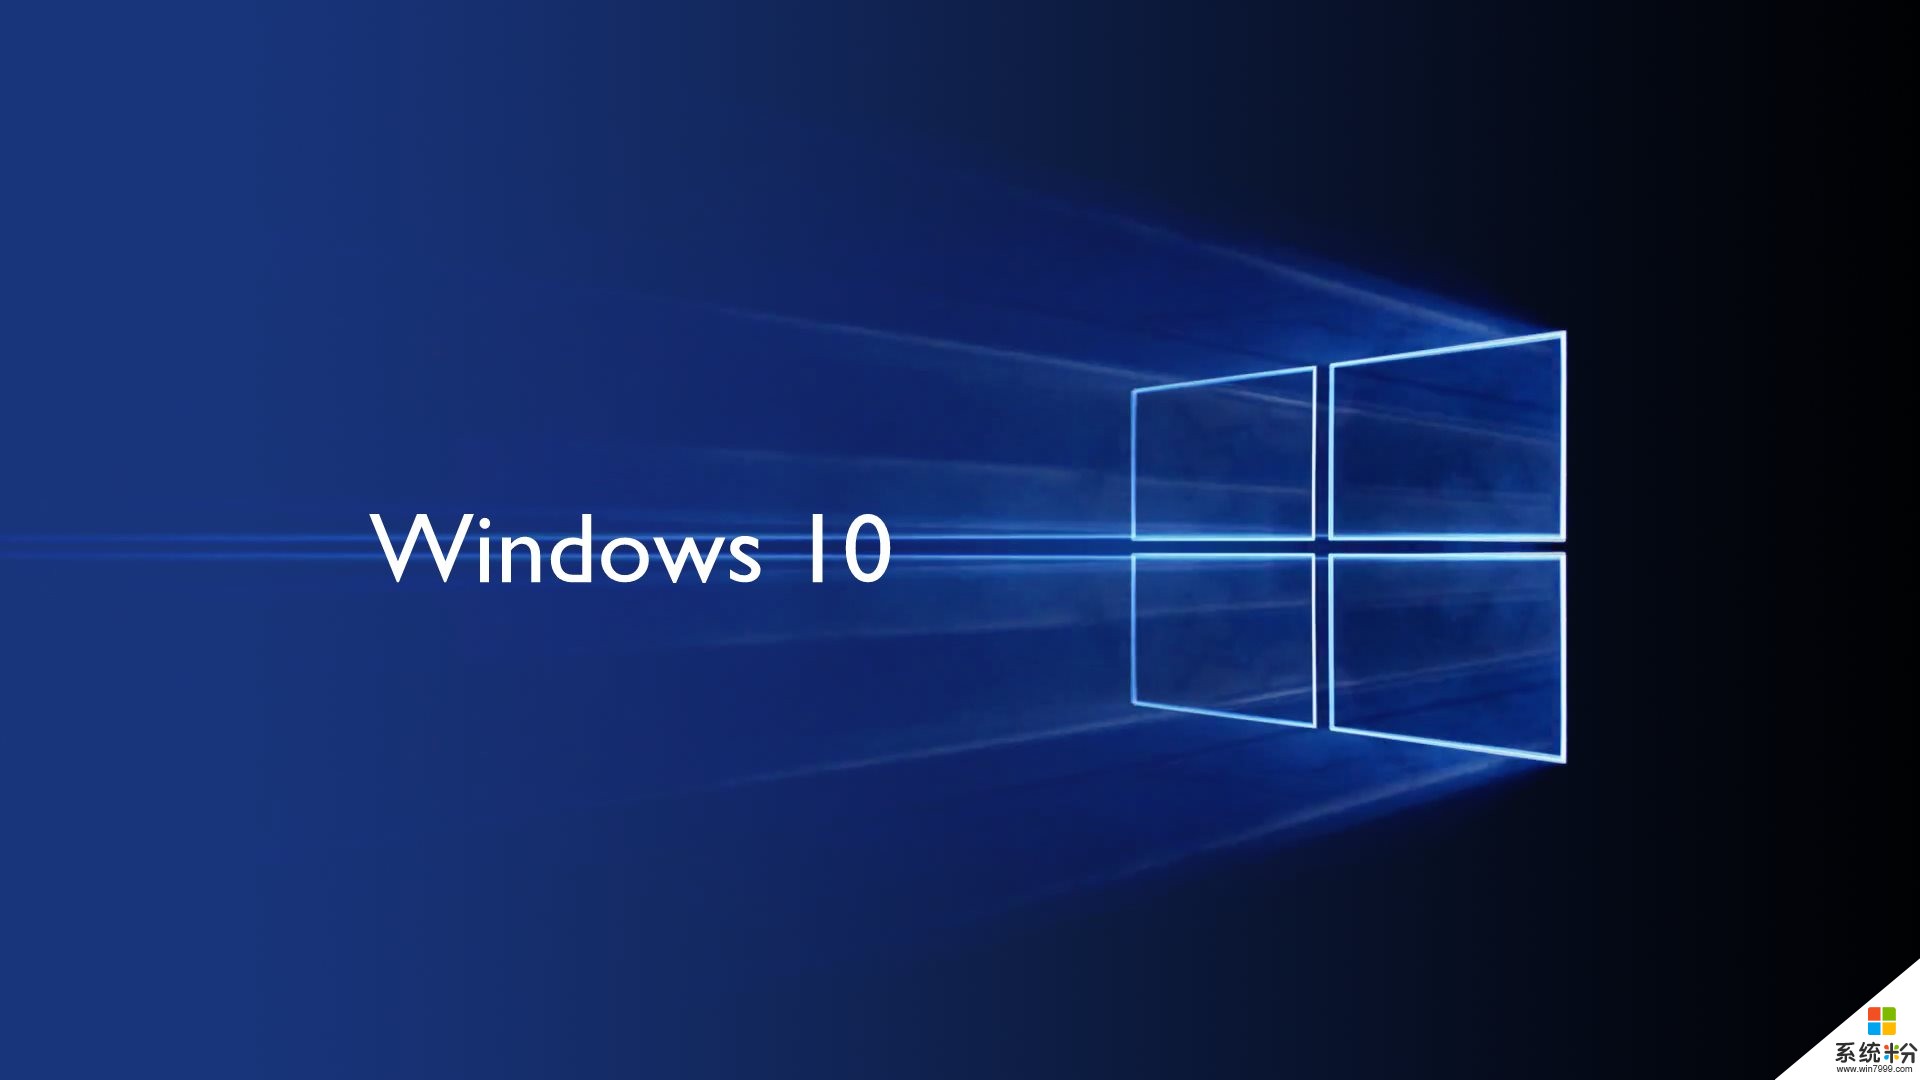 对于微软来说, Windows 10 还重要吗?